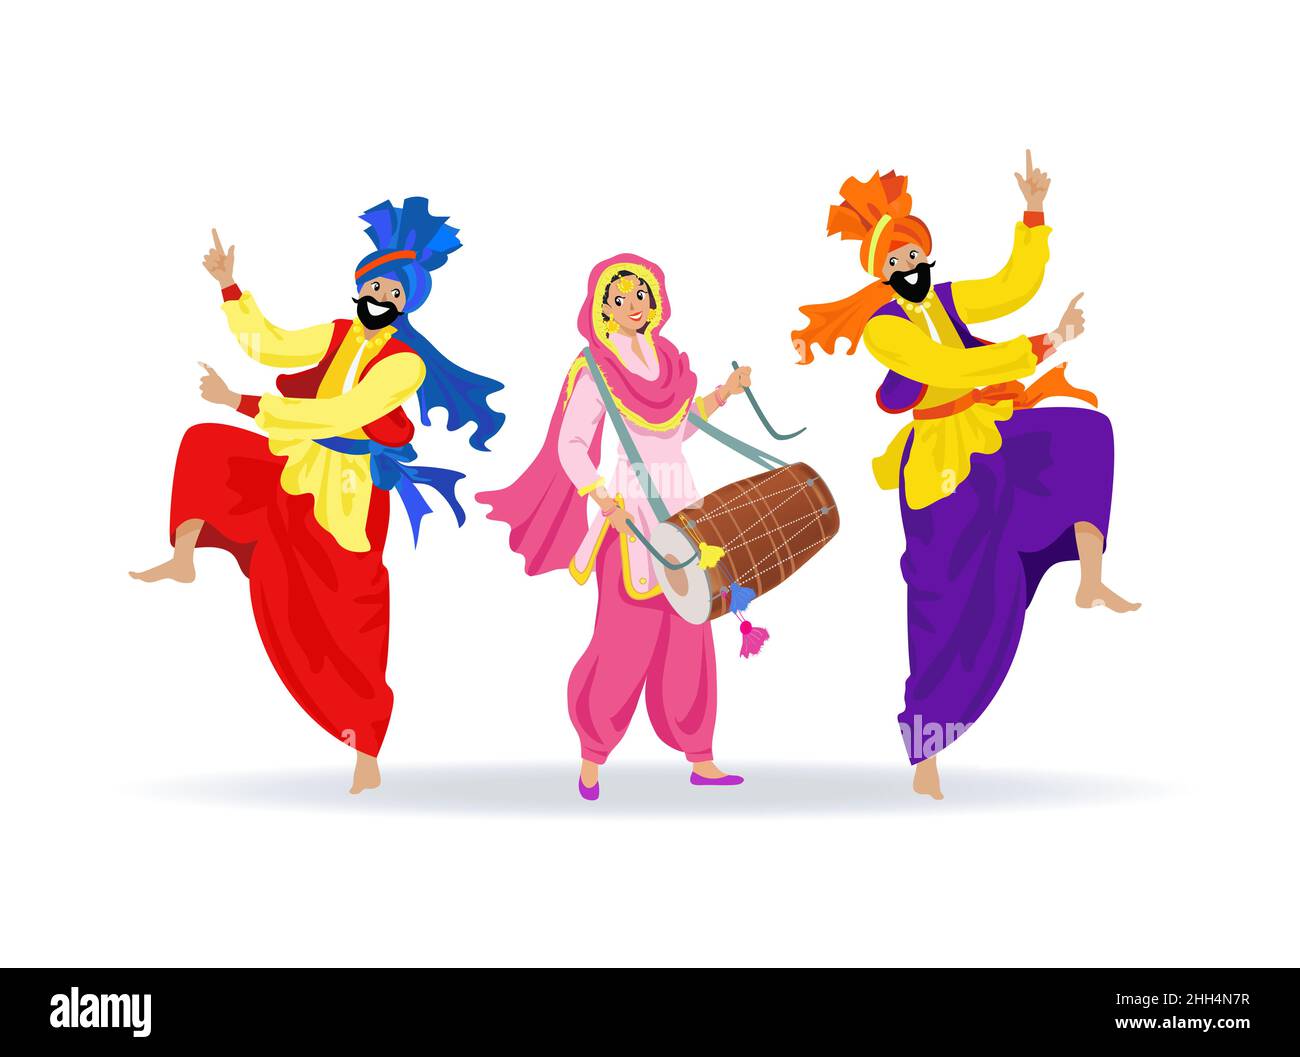 Trois personnes sikhes souriantes vêlées de vêtements colorés, dansant des hommes barbus sautant dans des turbans, heureuse fille riant en costume punjabi jouant dhol tambour Illustration de Vecteur